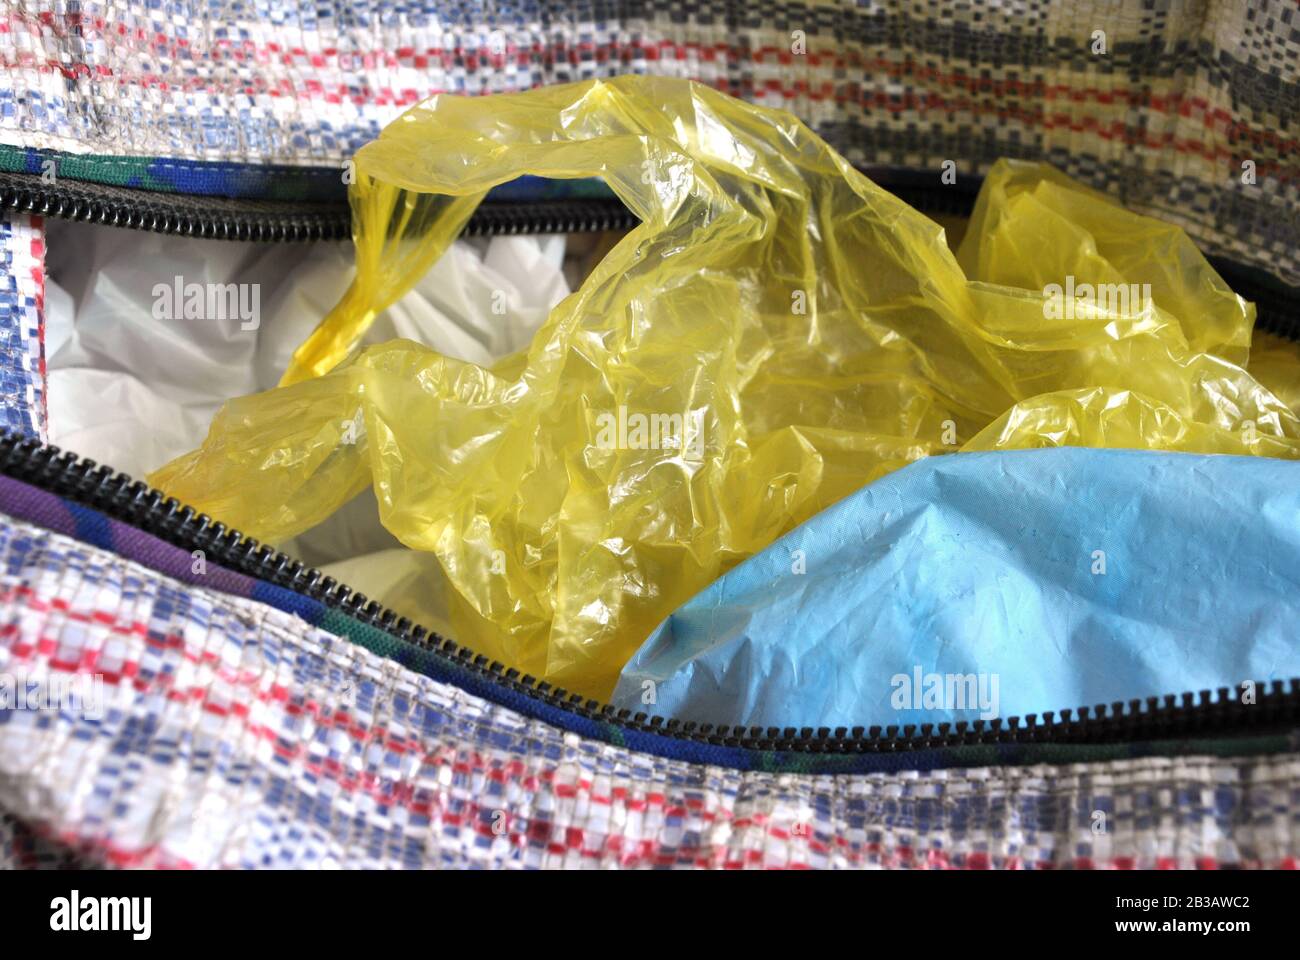 Vieux sacs en plastique colorés jaune, bleu et blanc Banque D'Images